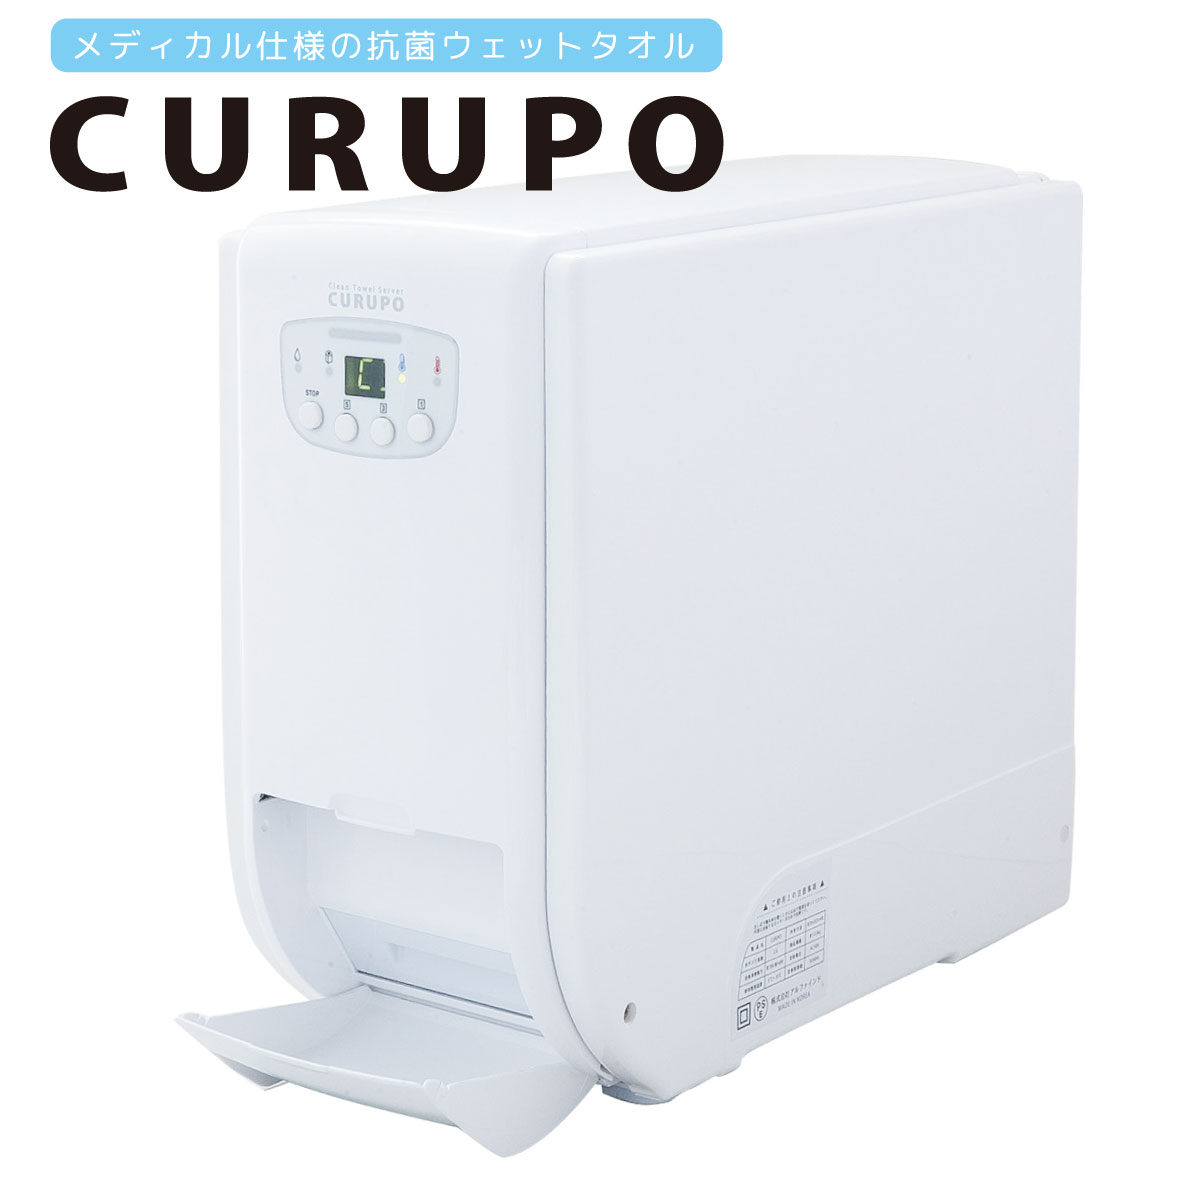 自動おしぼり機「CURUPO（クルポ）」／メディカル仕様の抗菌ウェット